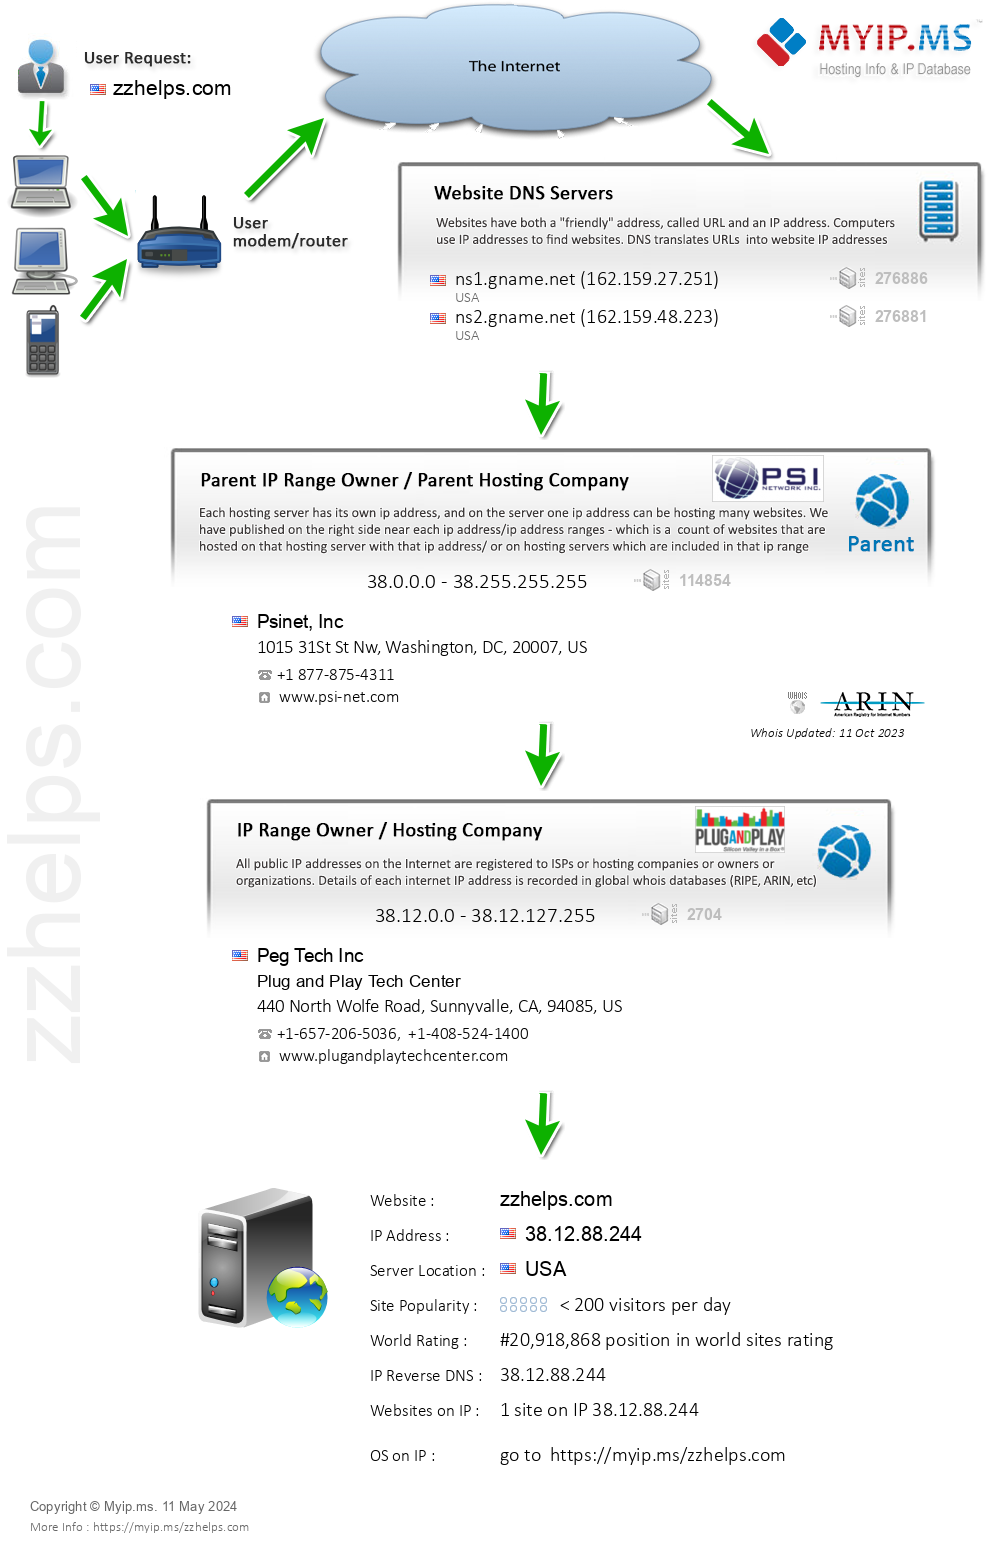 Zzhelps.com - Website Hosting Visual IP Diagram